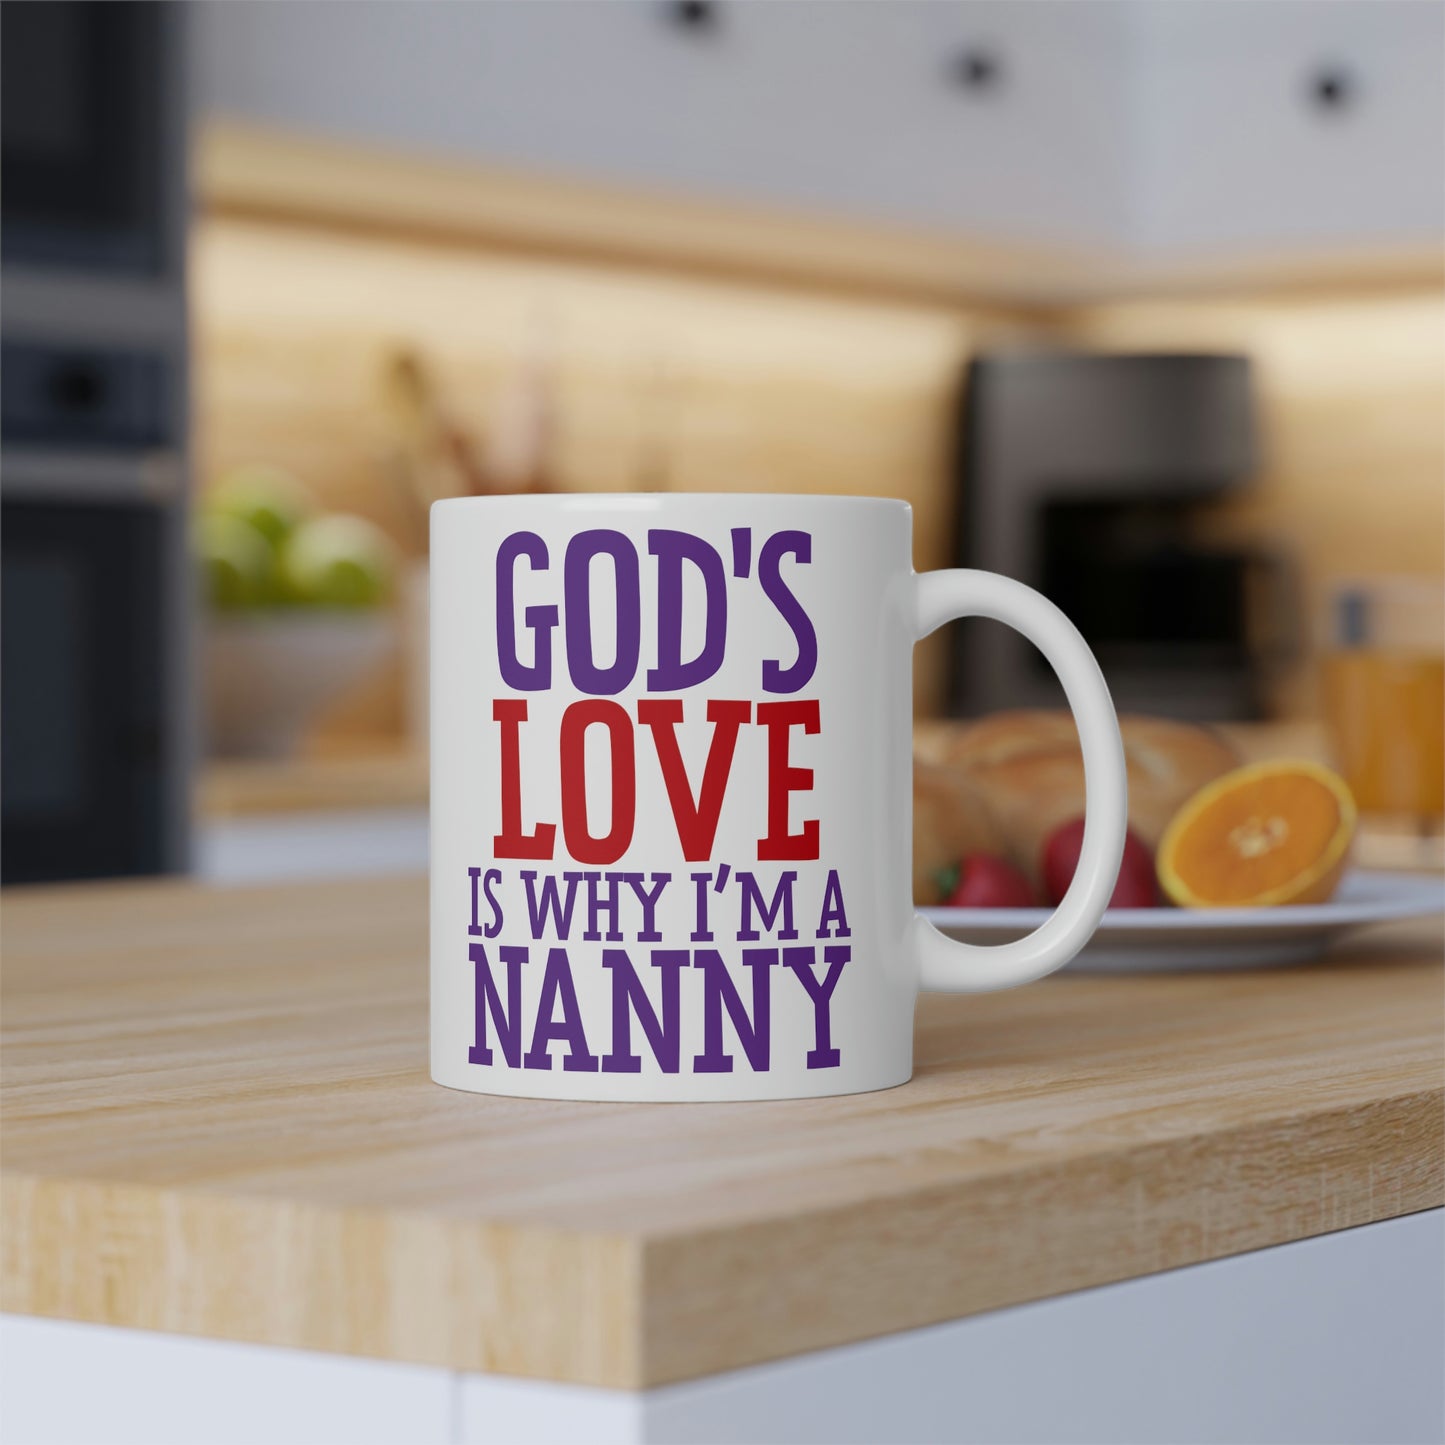 God's Love is why I'm a Nanny Mug, 11oz